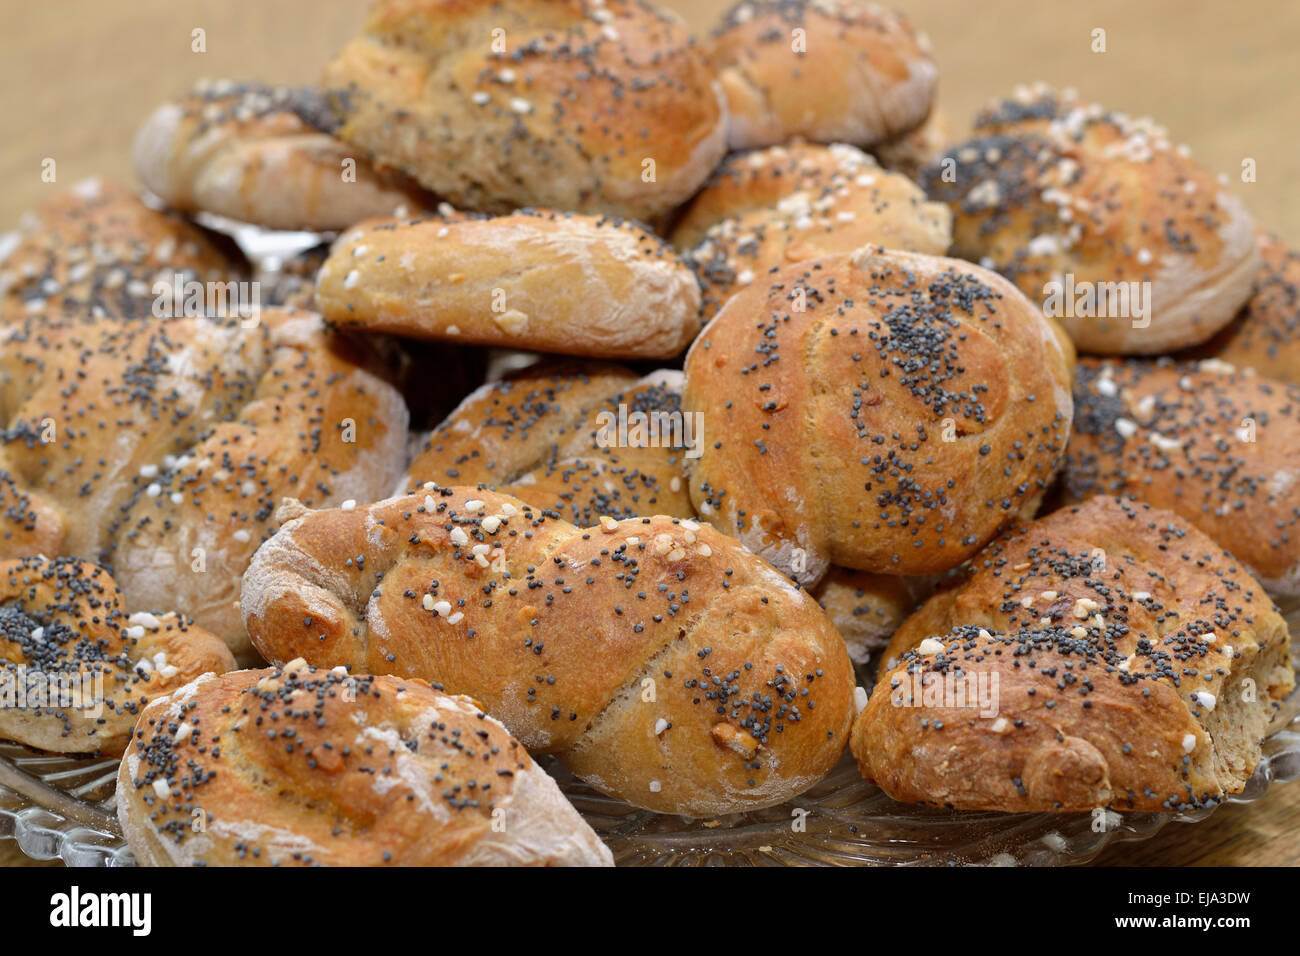 handmade breakfast pastries Stock Photo